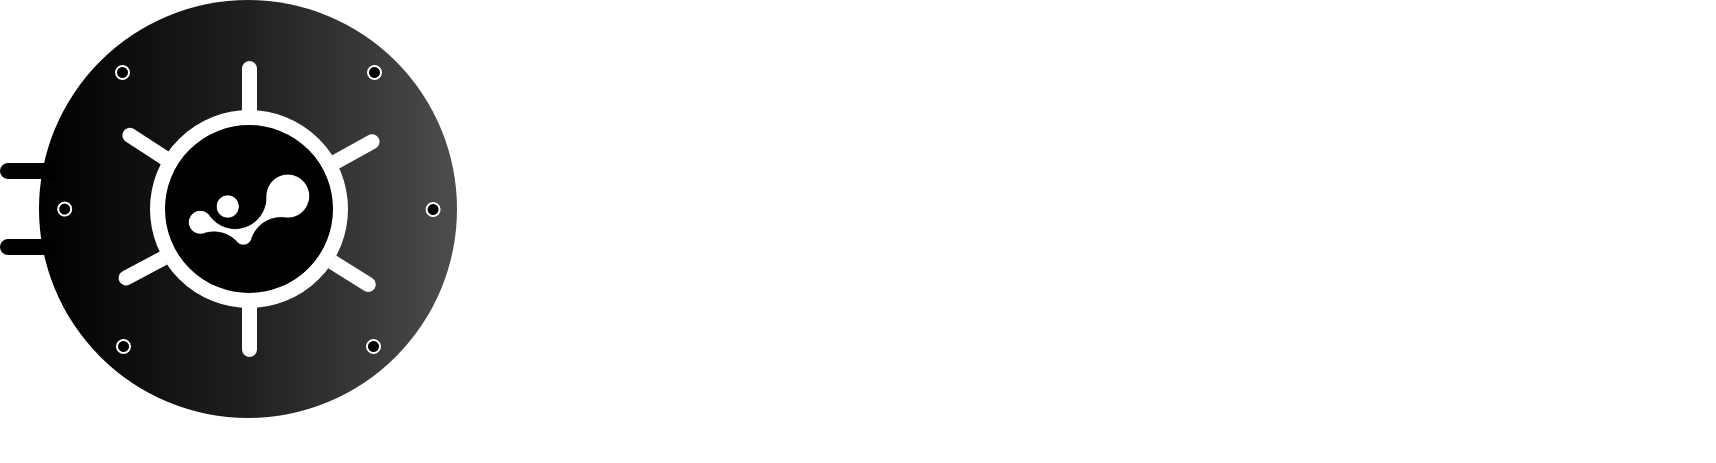 Vault Logo Final - White